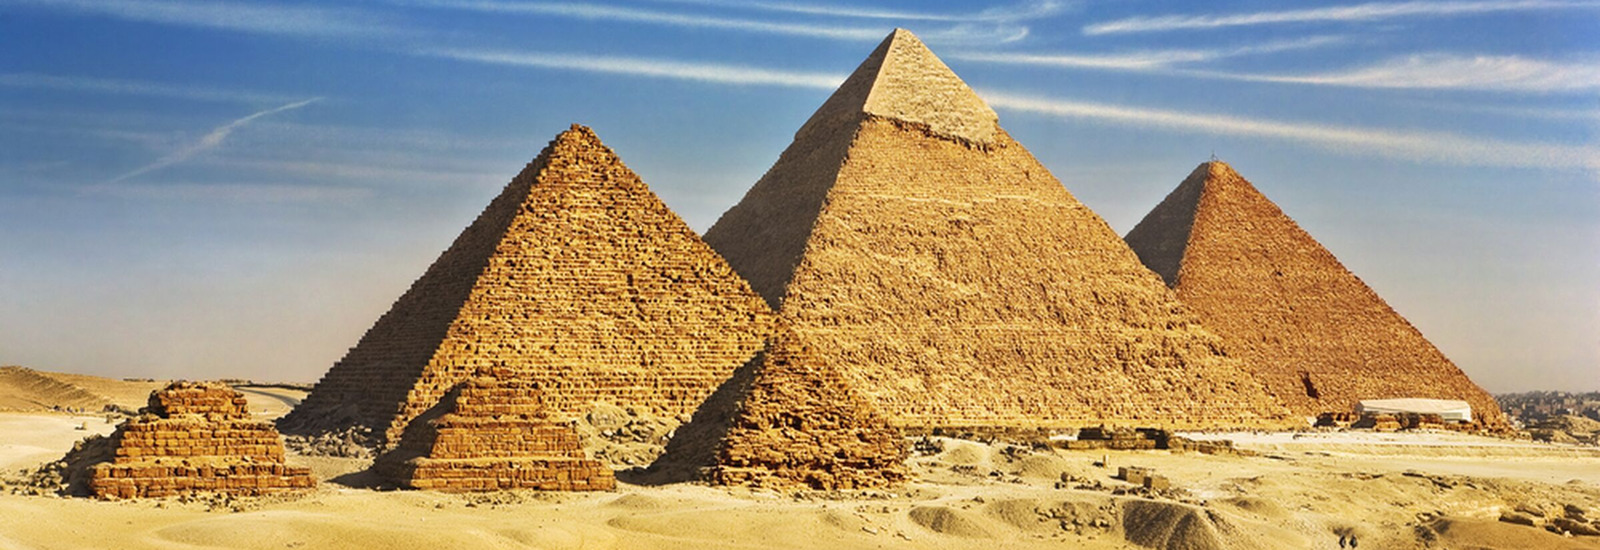 3 large pyramids 